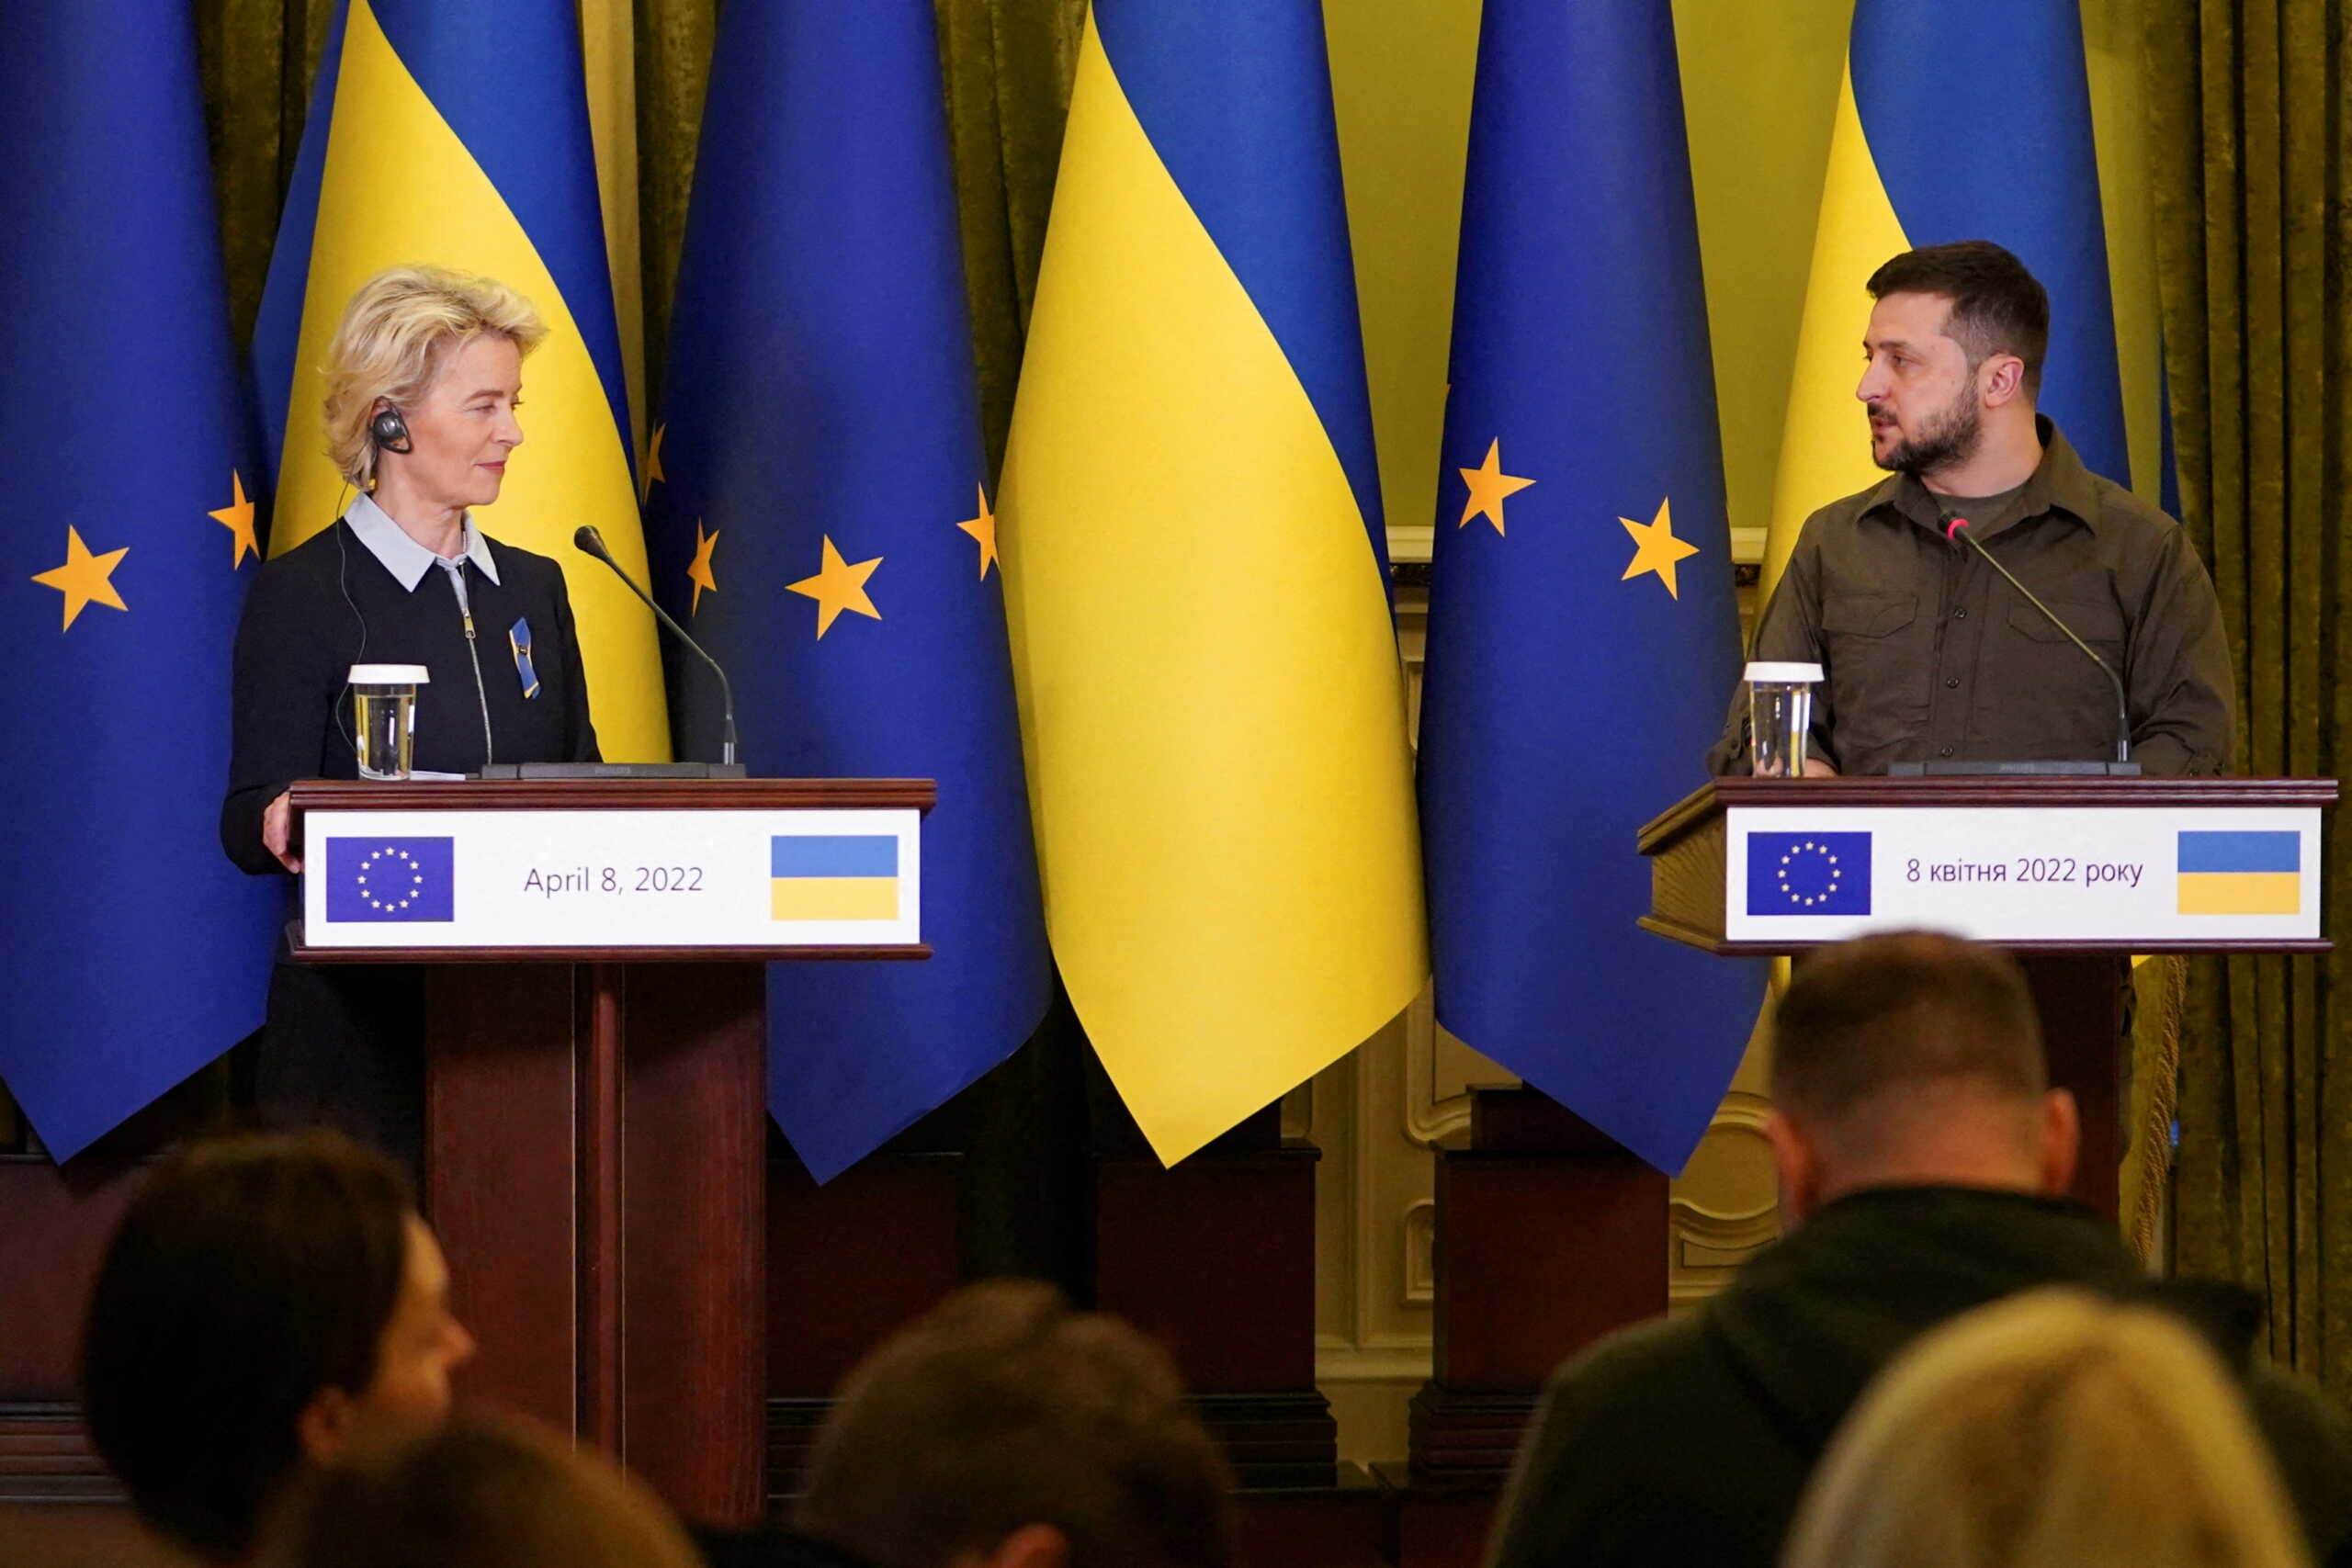 Ουκρανία: Ένα βήμα πιο κοντά στην ΕΕ – Ορίστηκε εισαγγελέας κατά της διαφθοράς